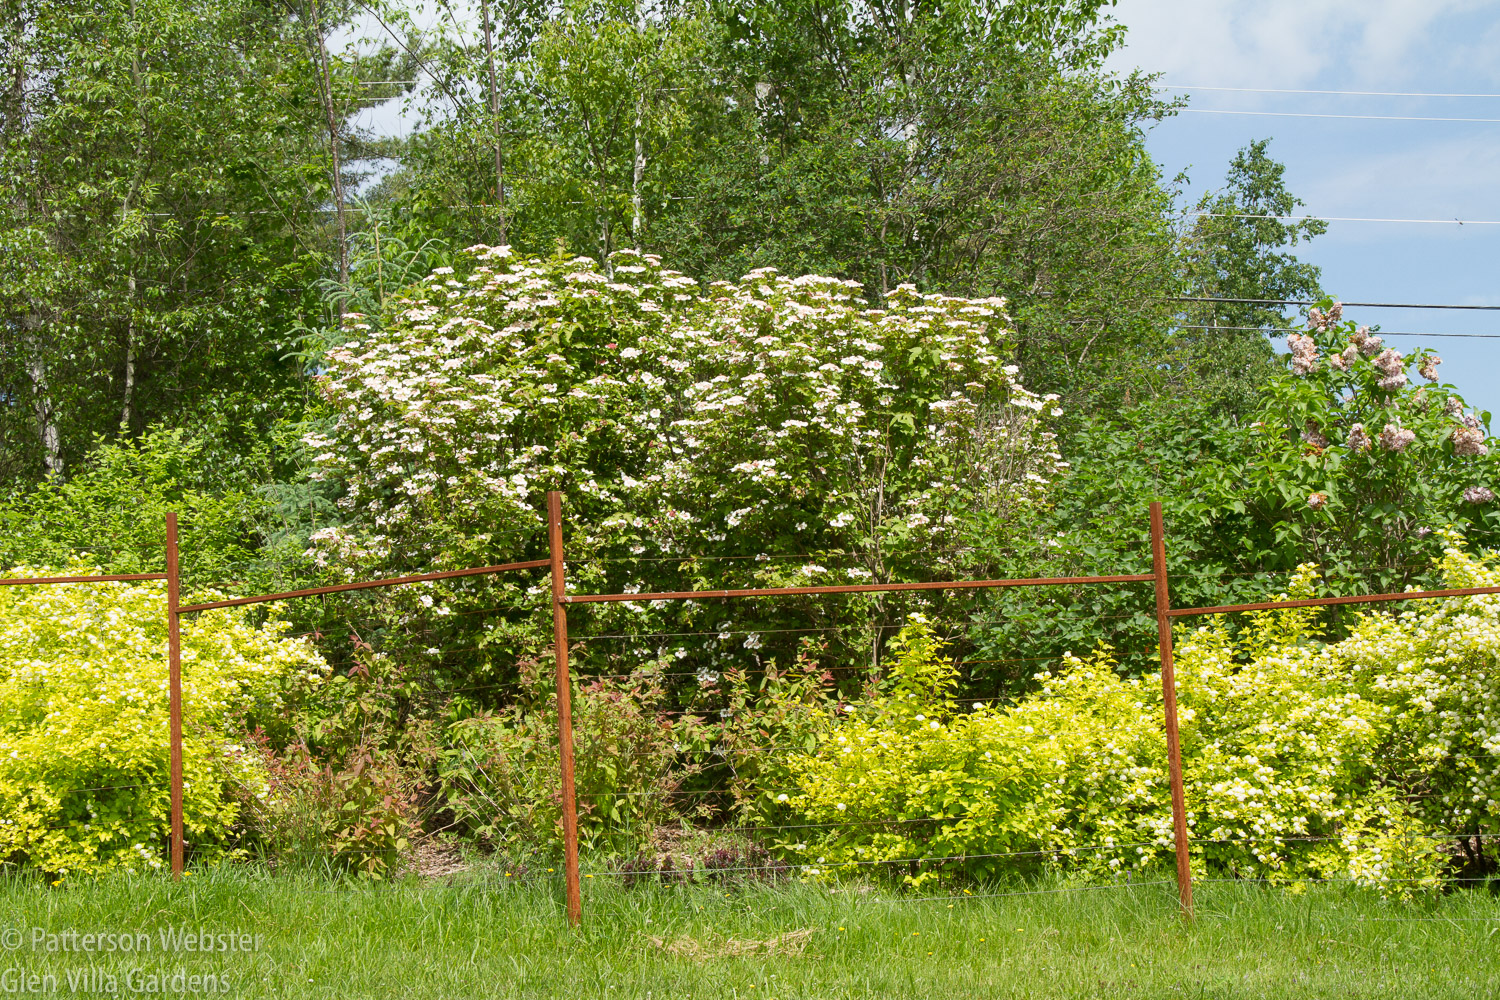 Viburnum sargemtii 'Onondaga' is standing tall. Physocarpus opulifolius 'Golden Dart' is in the foreground.